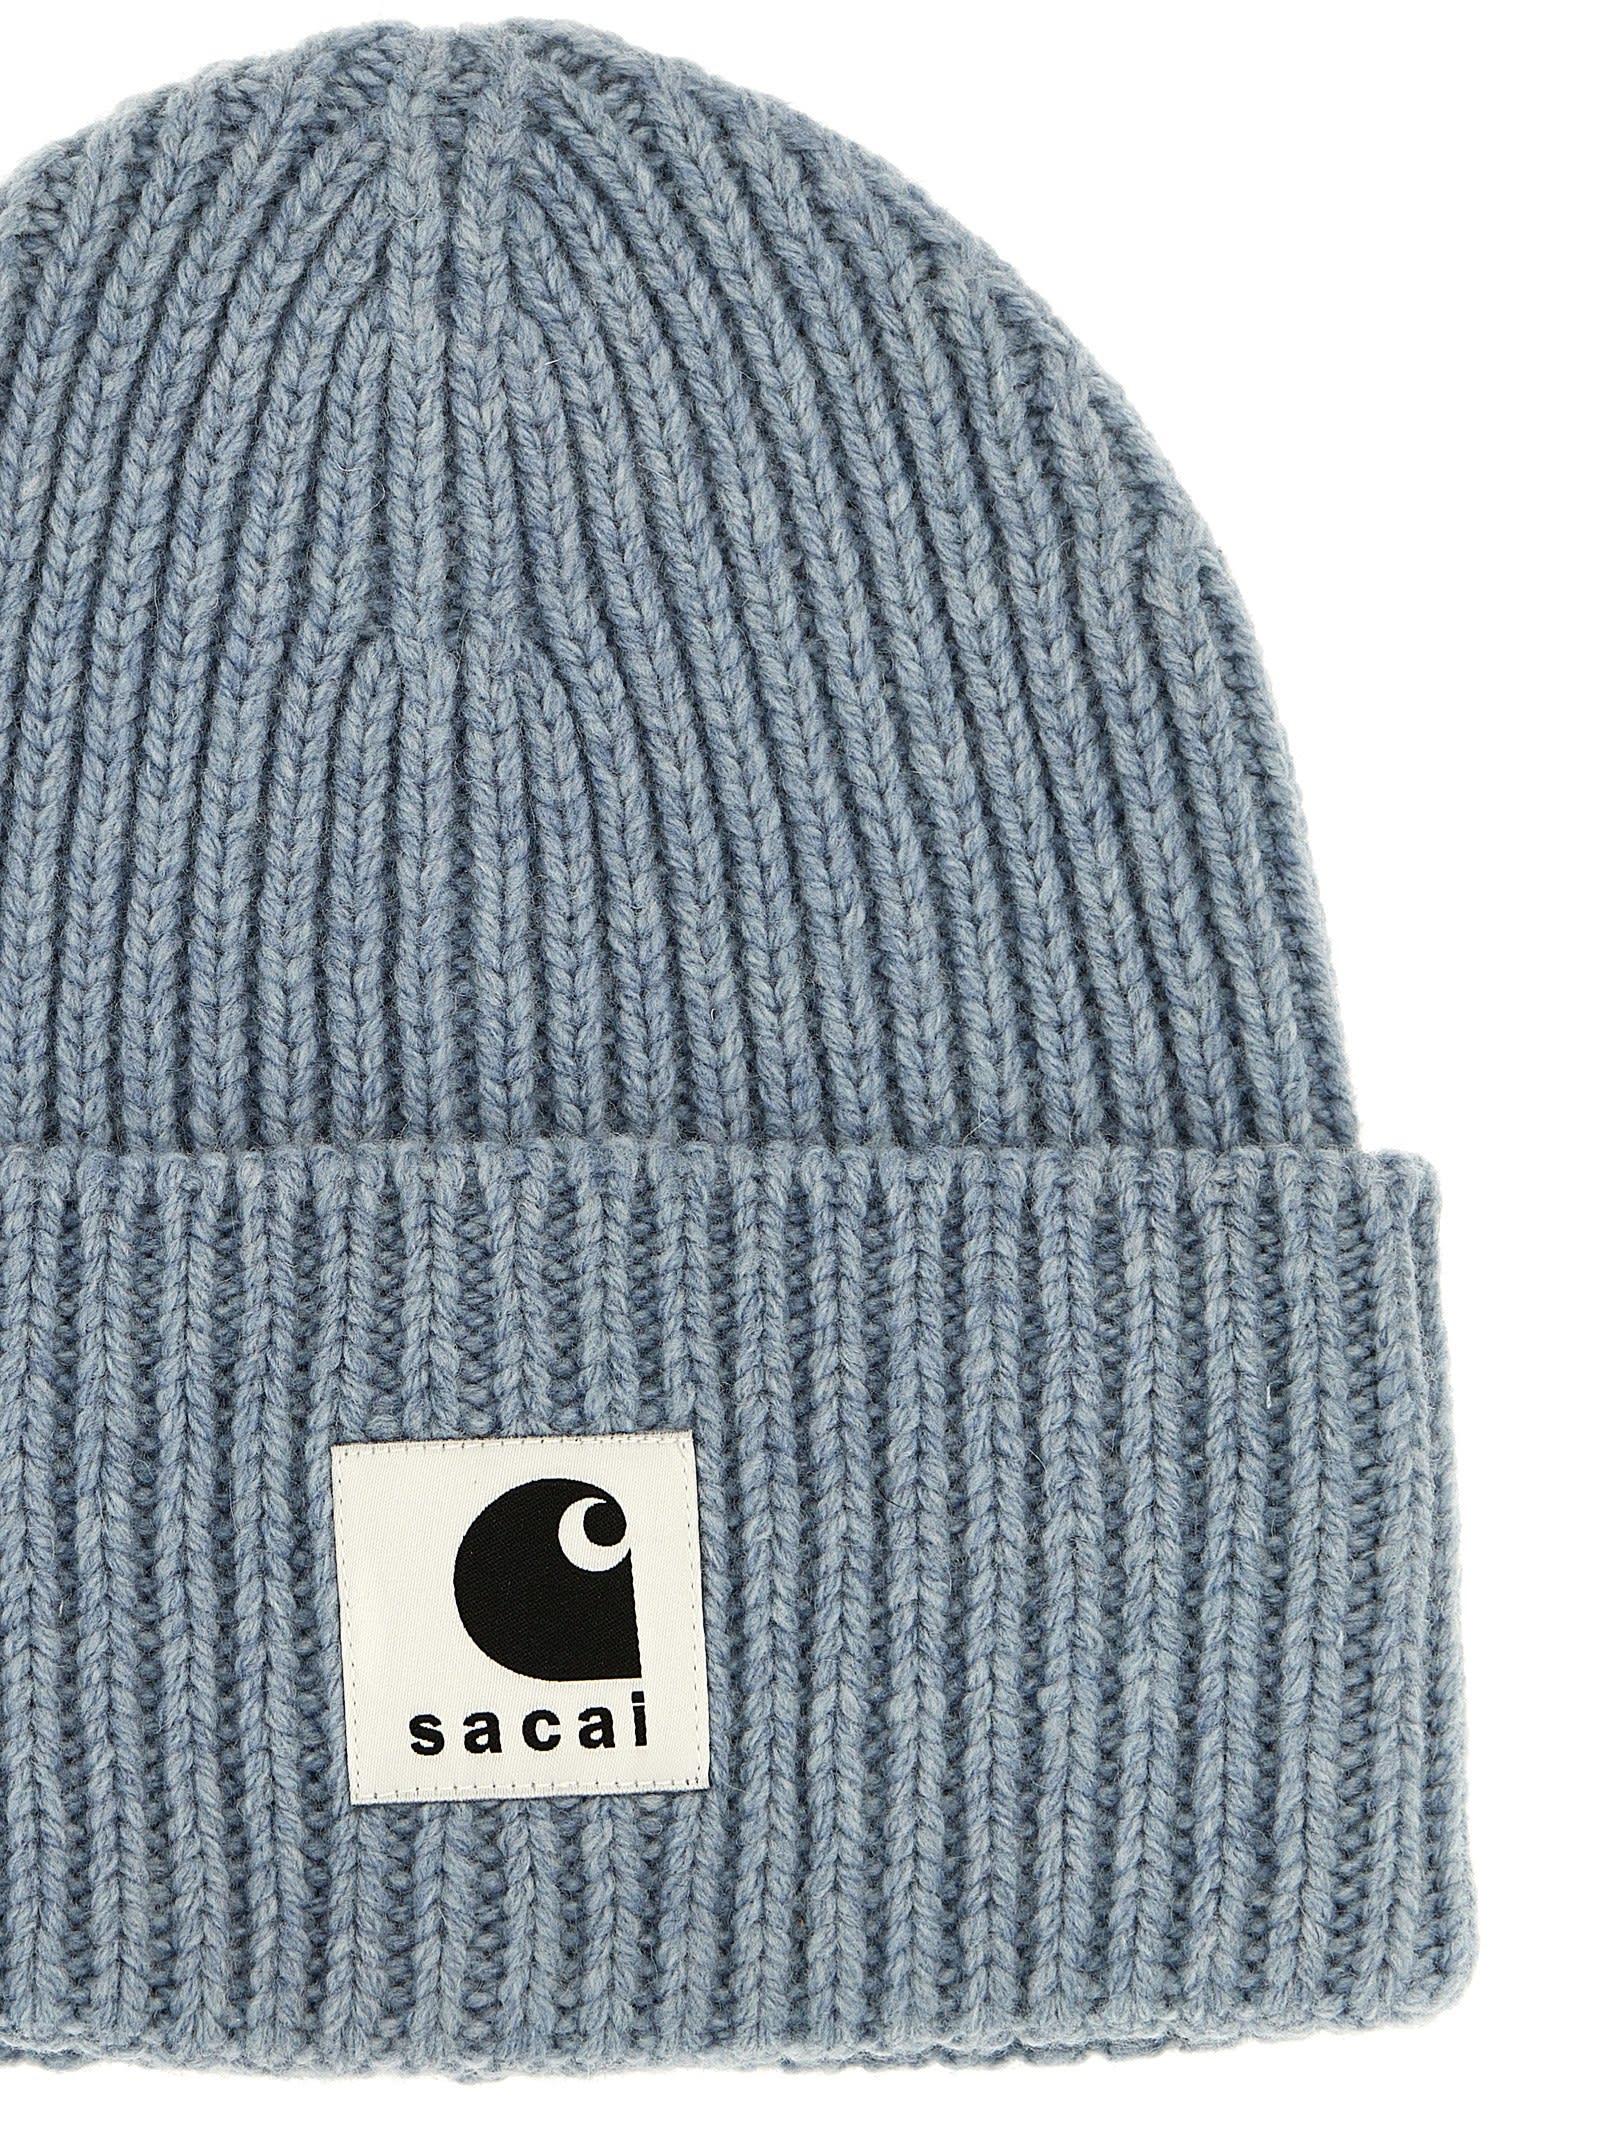 Sacai X Carhartt Wip Cap Hats Light Blue for Men | Lyst